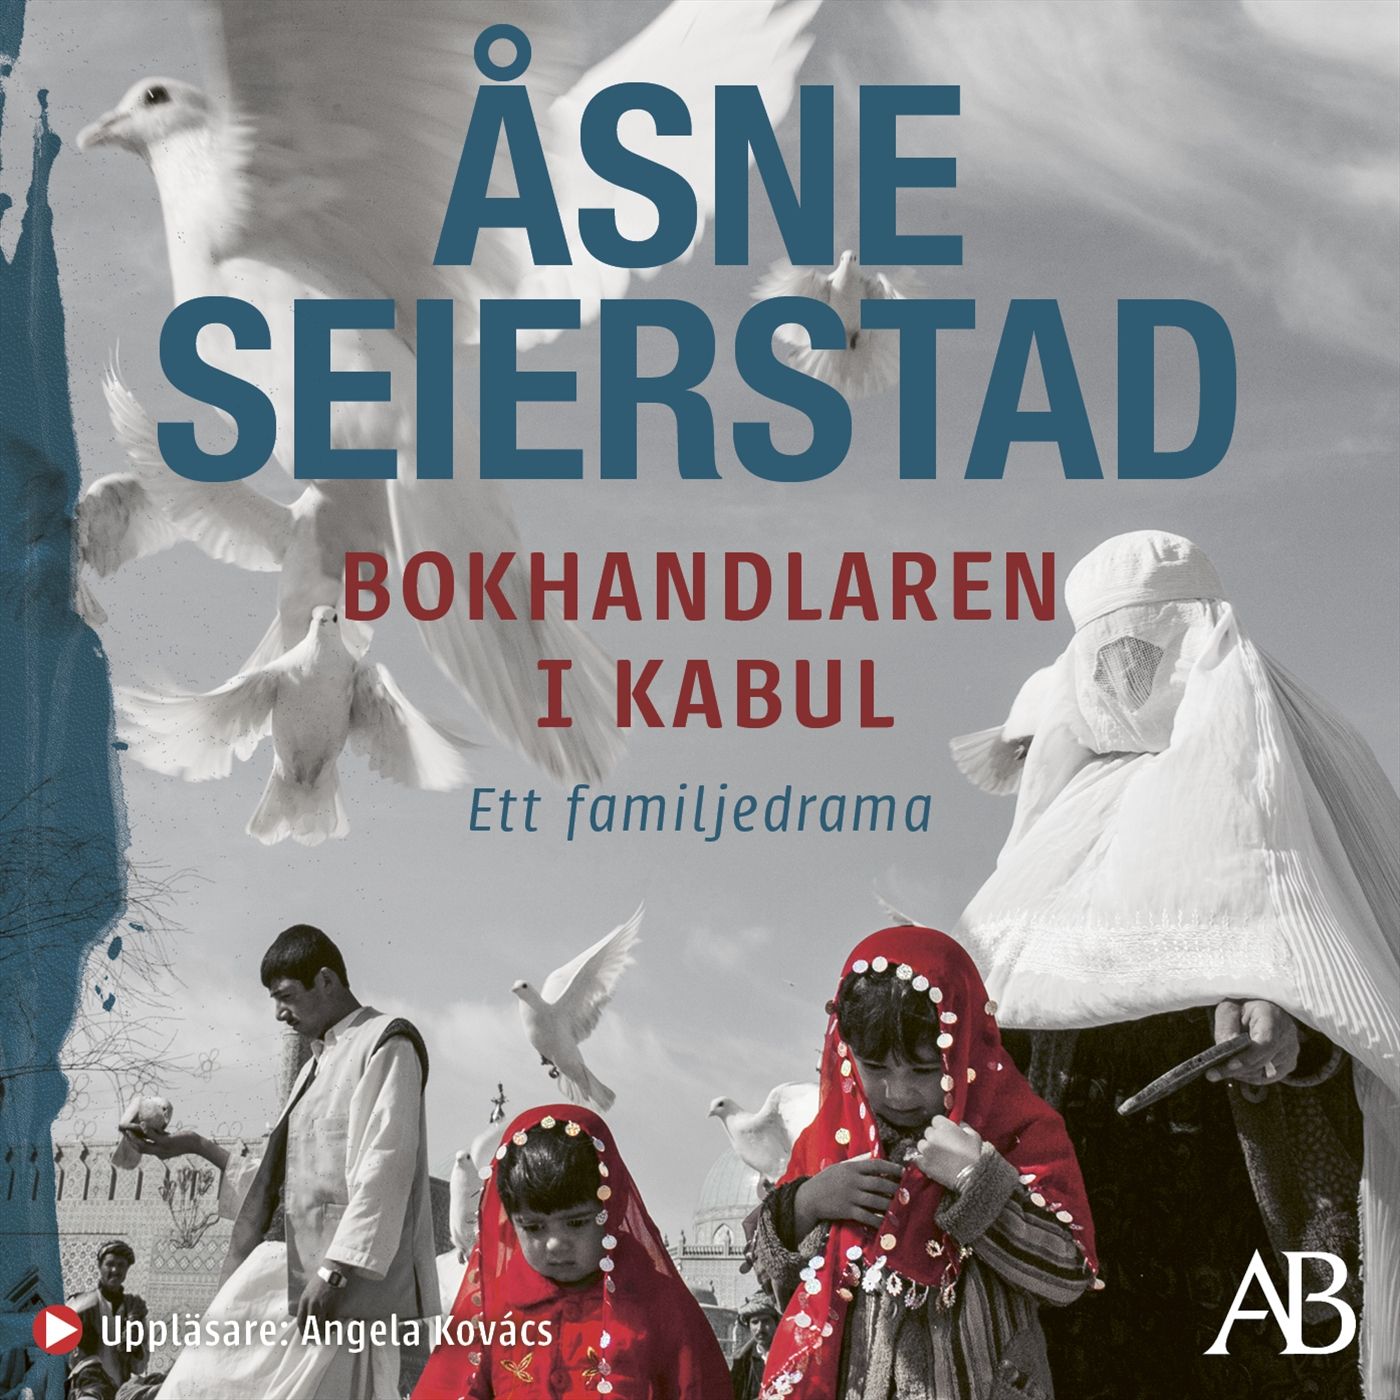 Bokhandlaren i Kabul, audiobook by Åsne Seierstad